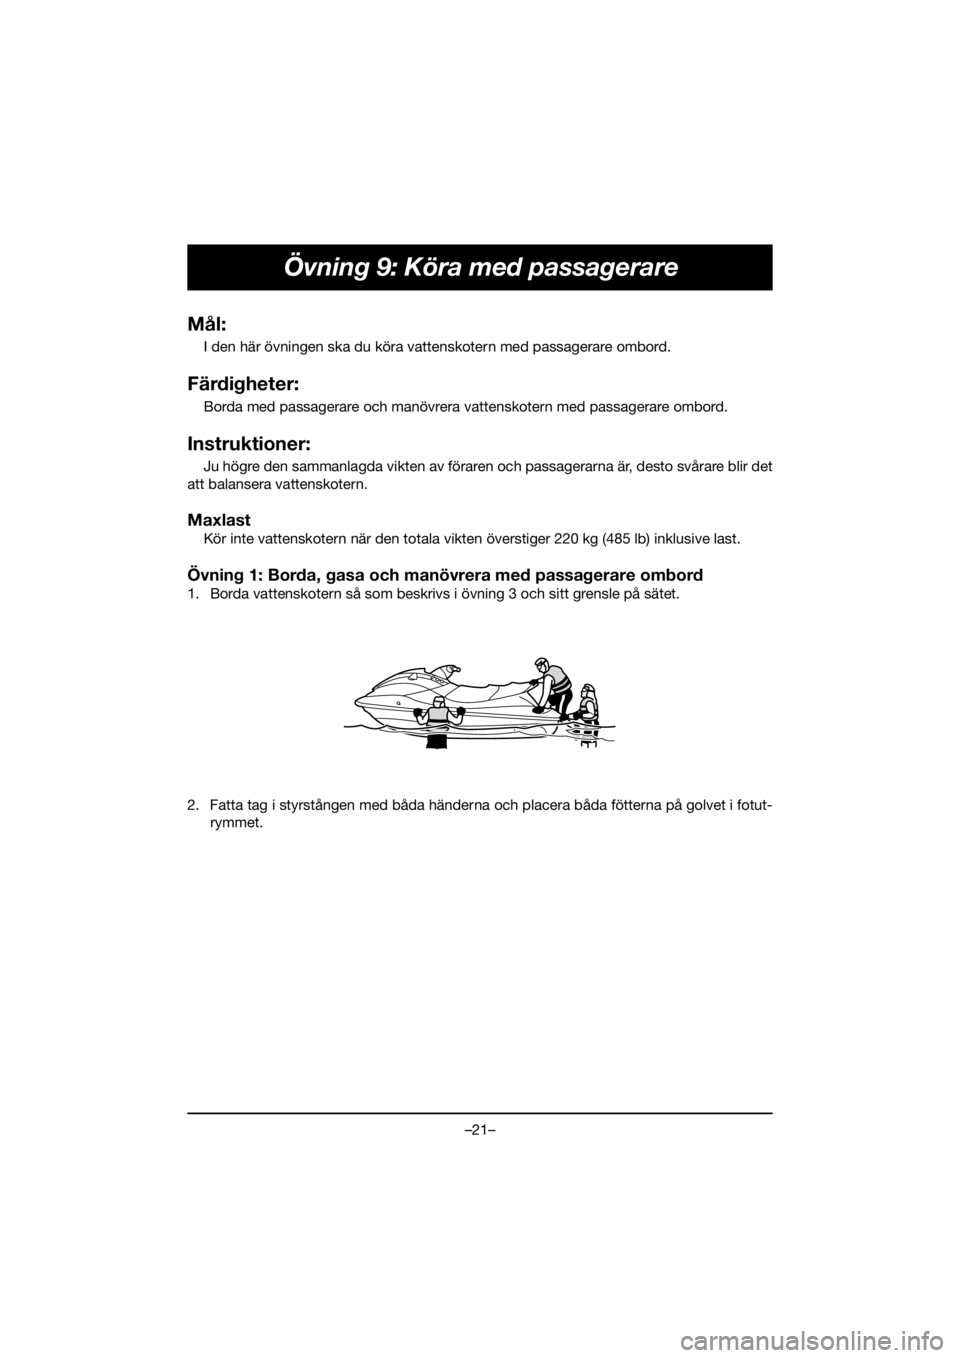 YAMAHA EX DELUXE 2020  Owners Manual –21–
Övning 9: Köra med passagerare
Mål:
I den här övningen ska du köra vattenskotern med passagerare ombord.
Färdigheter:
Borda med passagerare och manövrera vattenskotern med passagerare